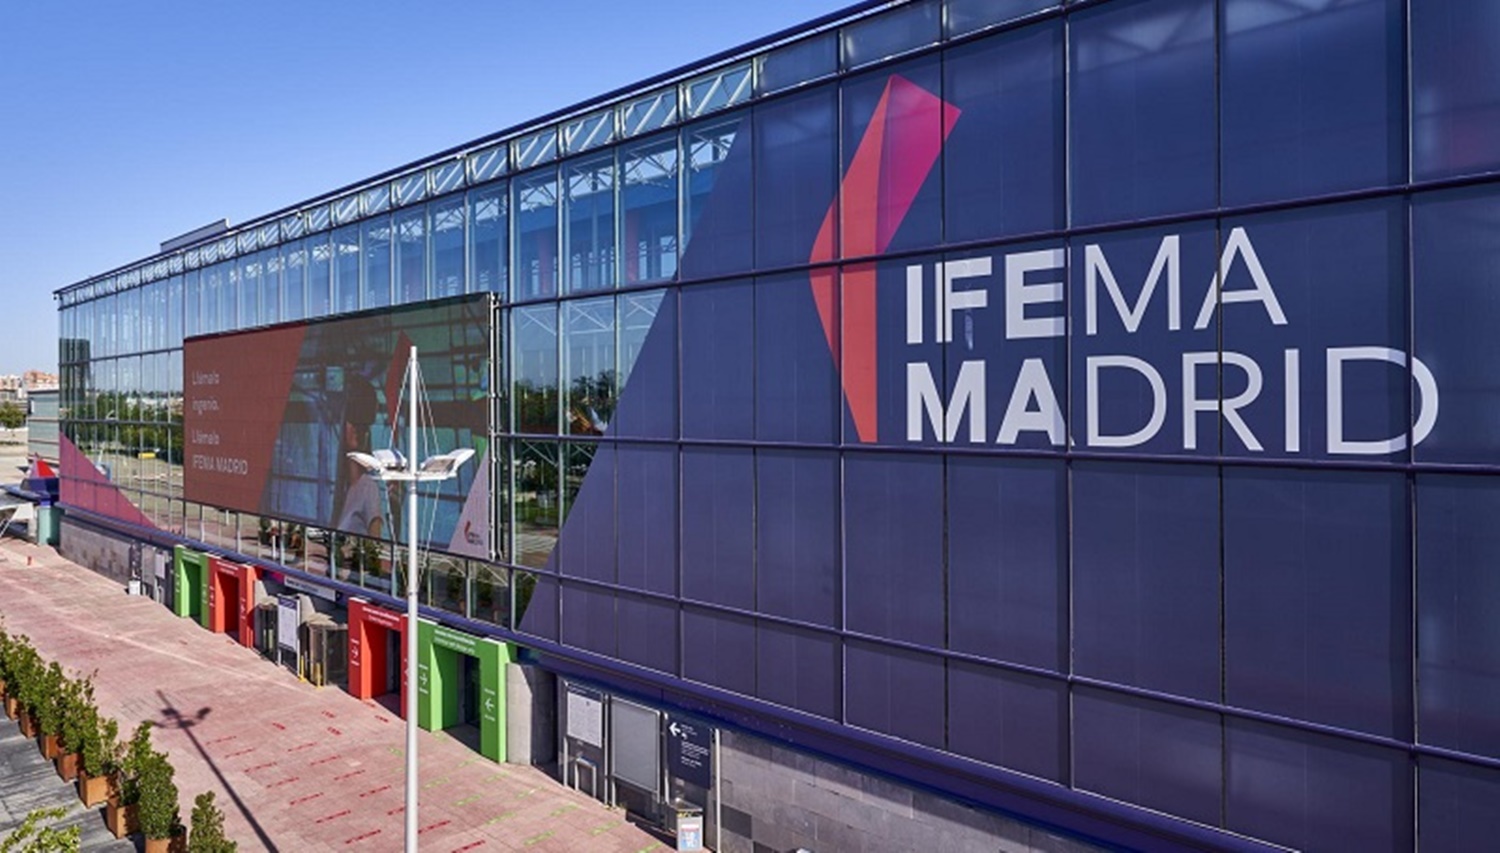 IFEMA gran premio de madrid de fórmula 1 f1